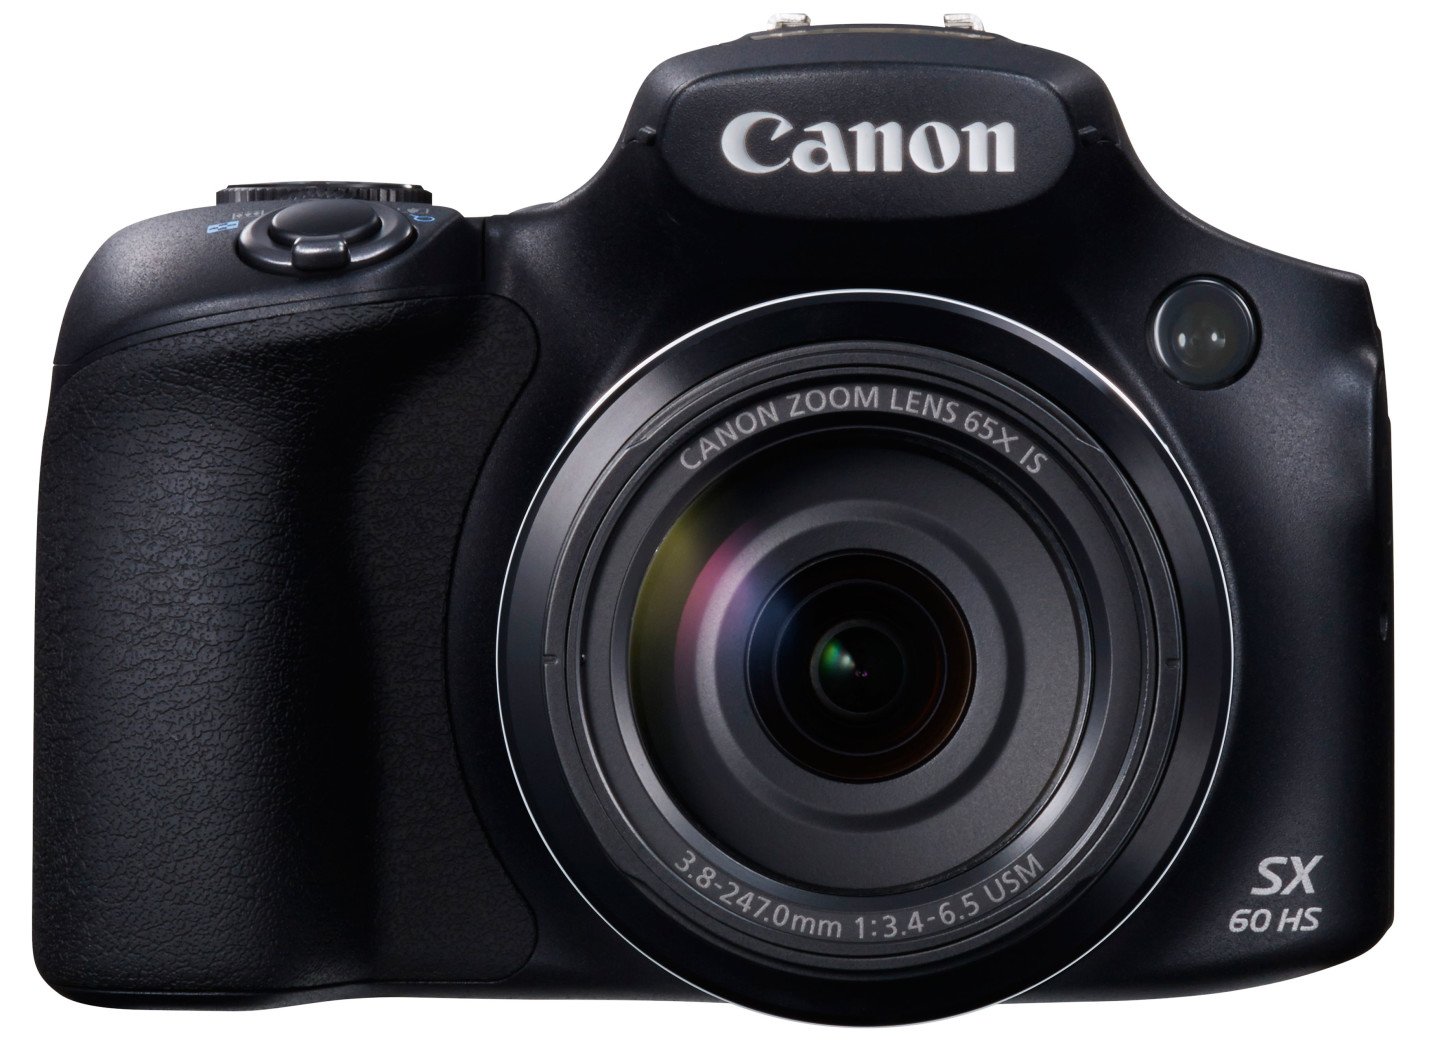 Canon SX60 HS front